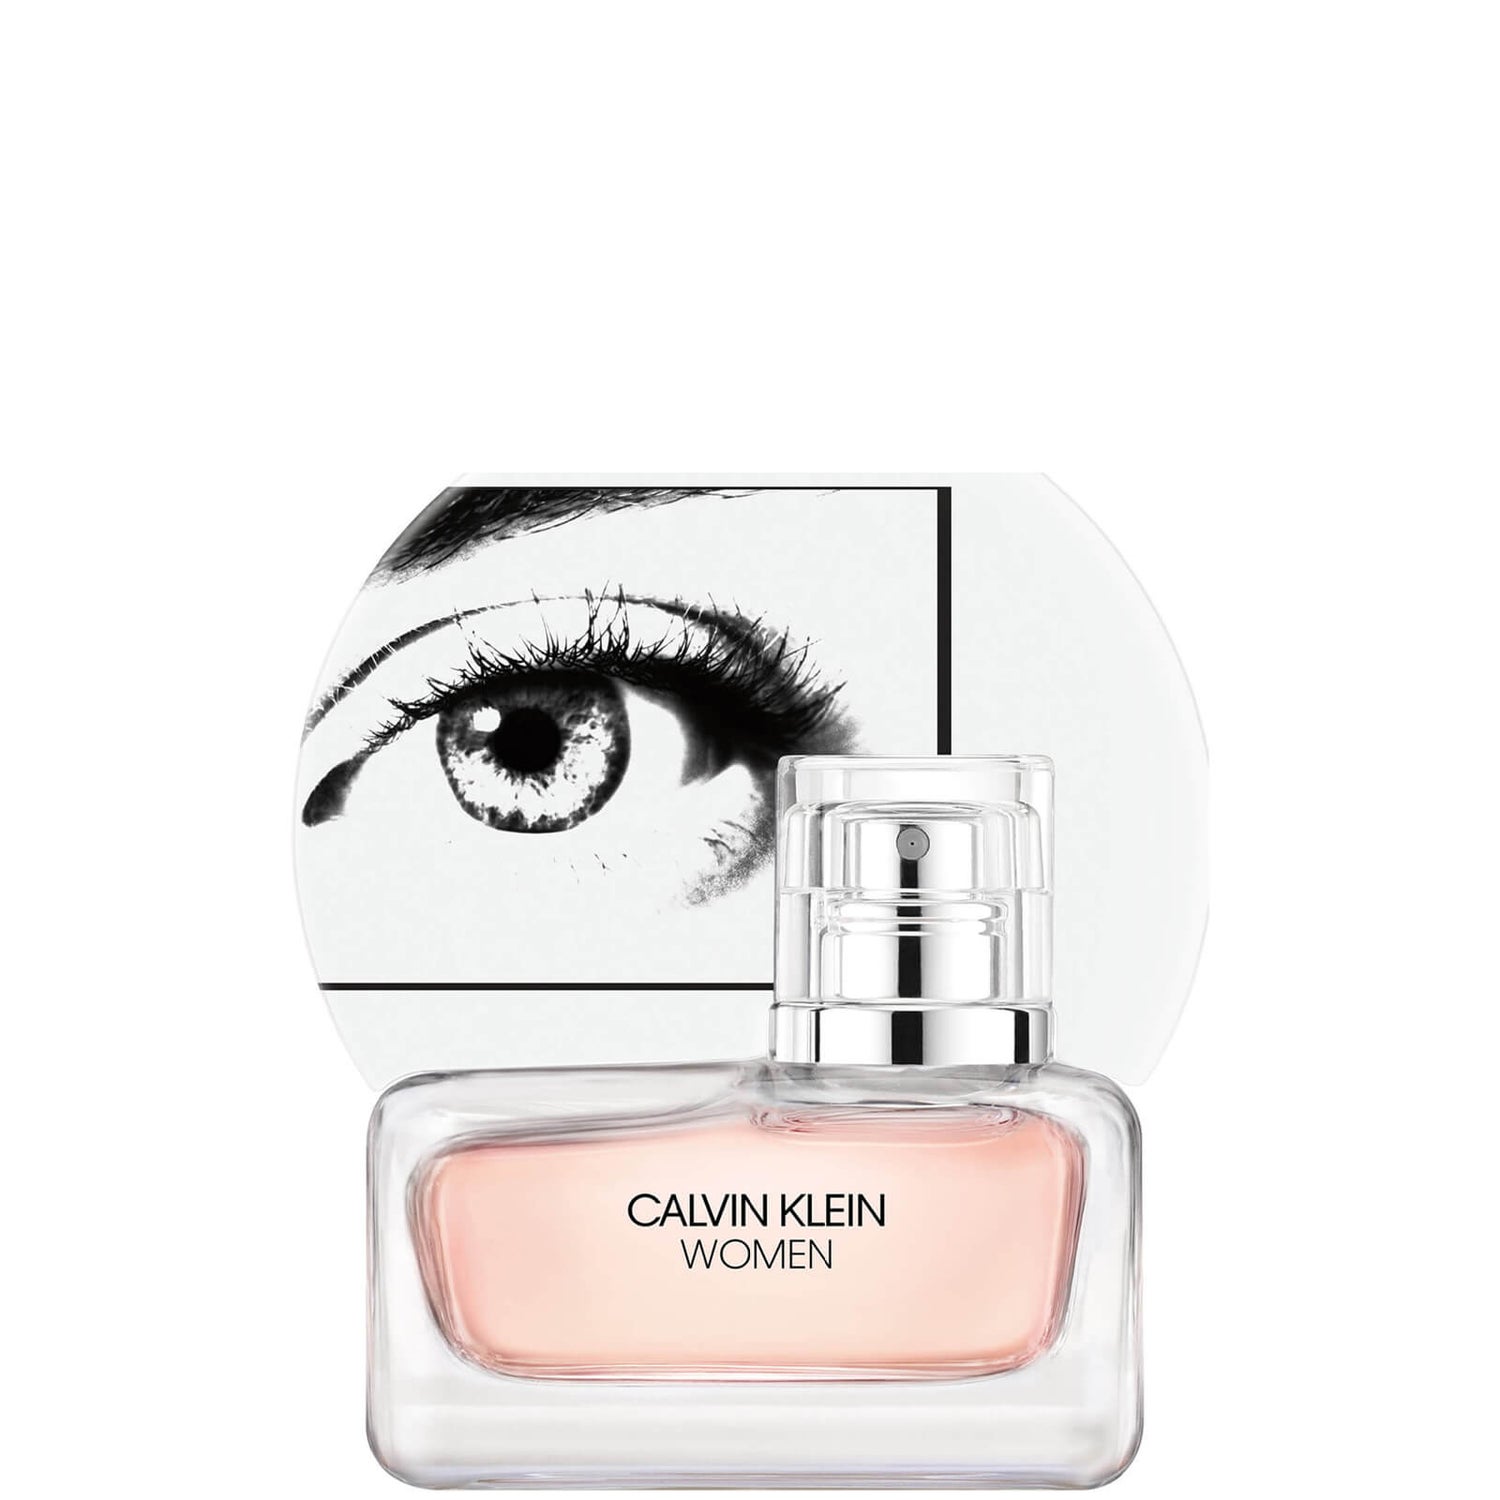 Calvin Klein Women Eau de Parfum 30ml - LOOKFANTASTIC